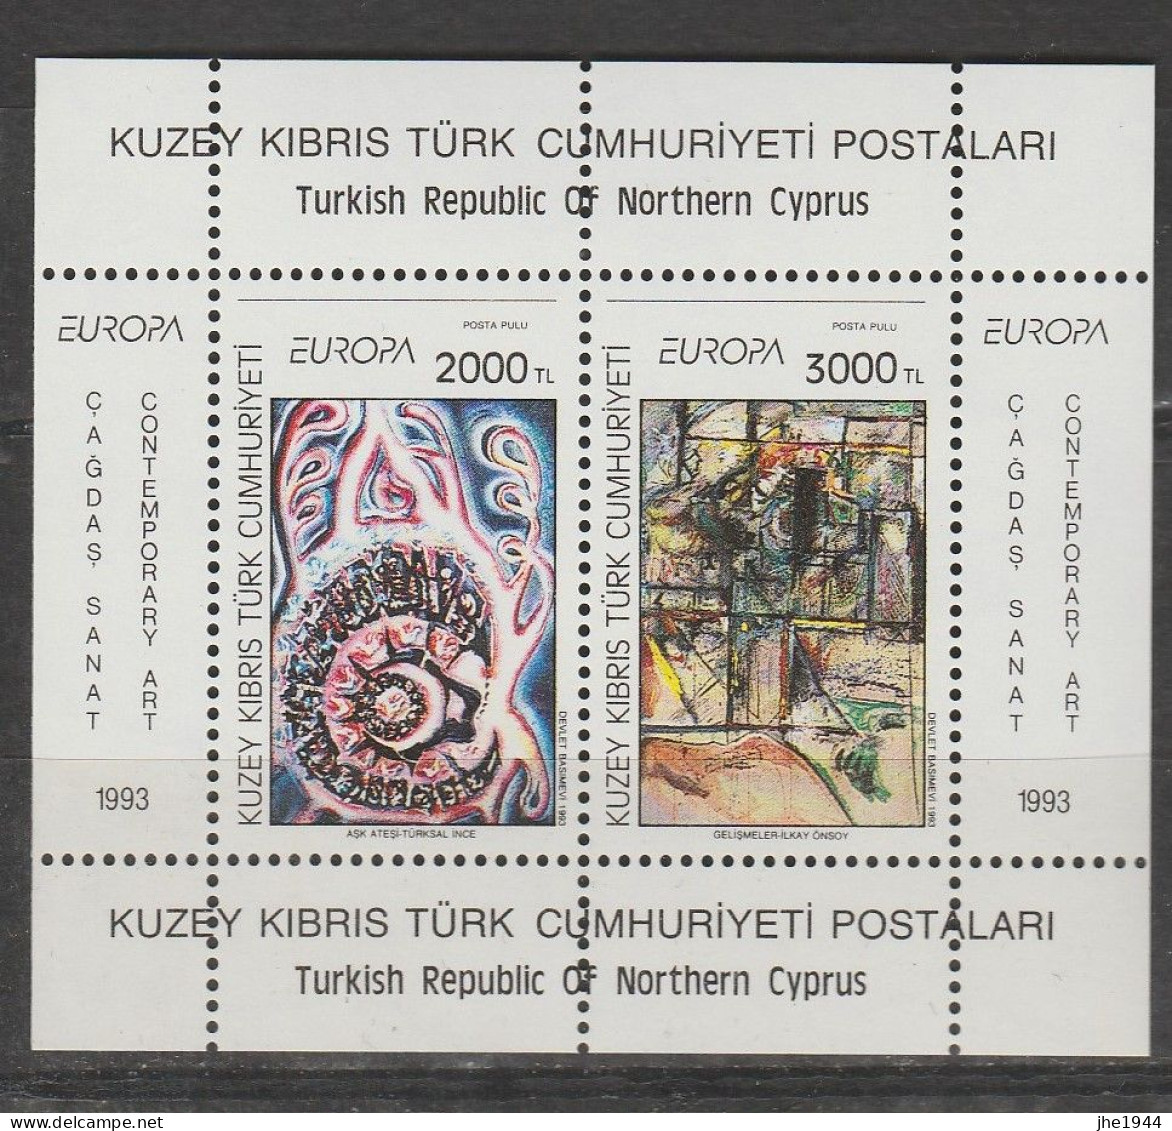 Europa 1993 Art contemporain Voir liste des timbres à vendre **